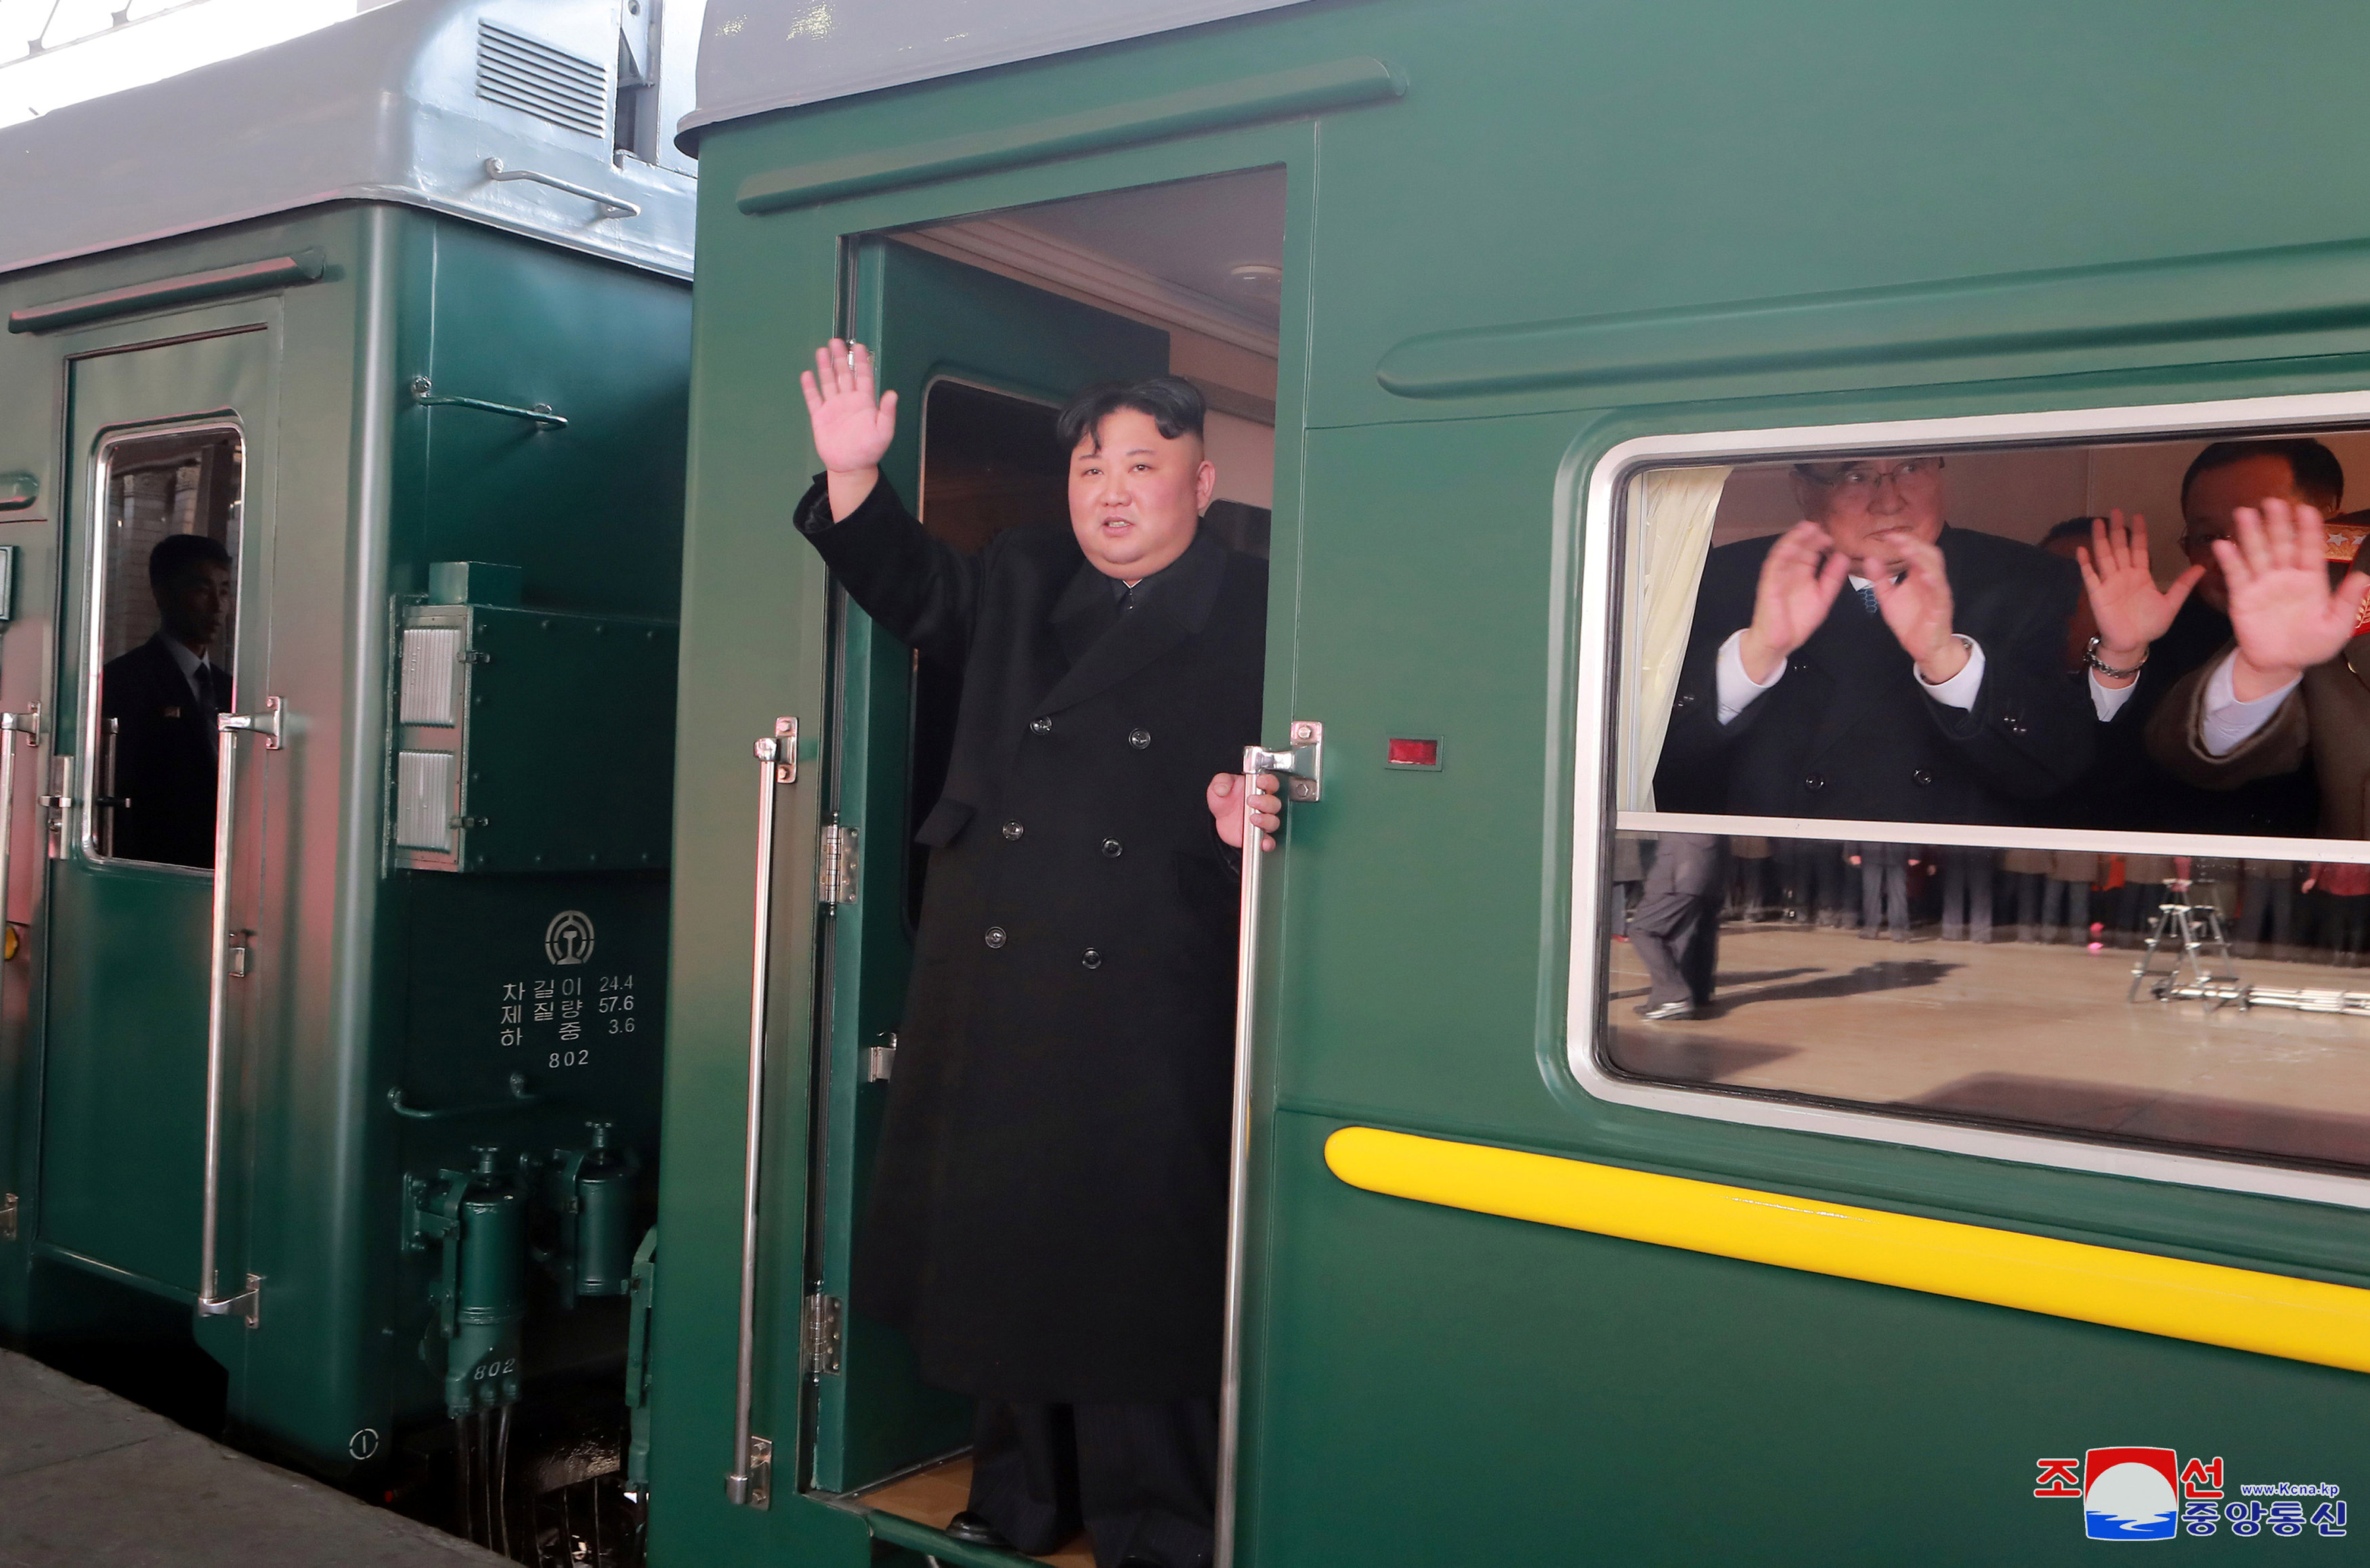 زعيم كوريا الشمالية يغادر بالقطار (3)